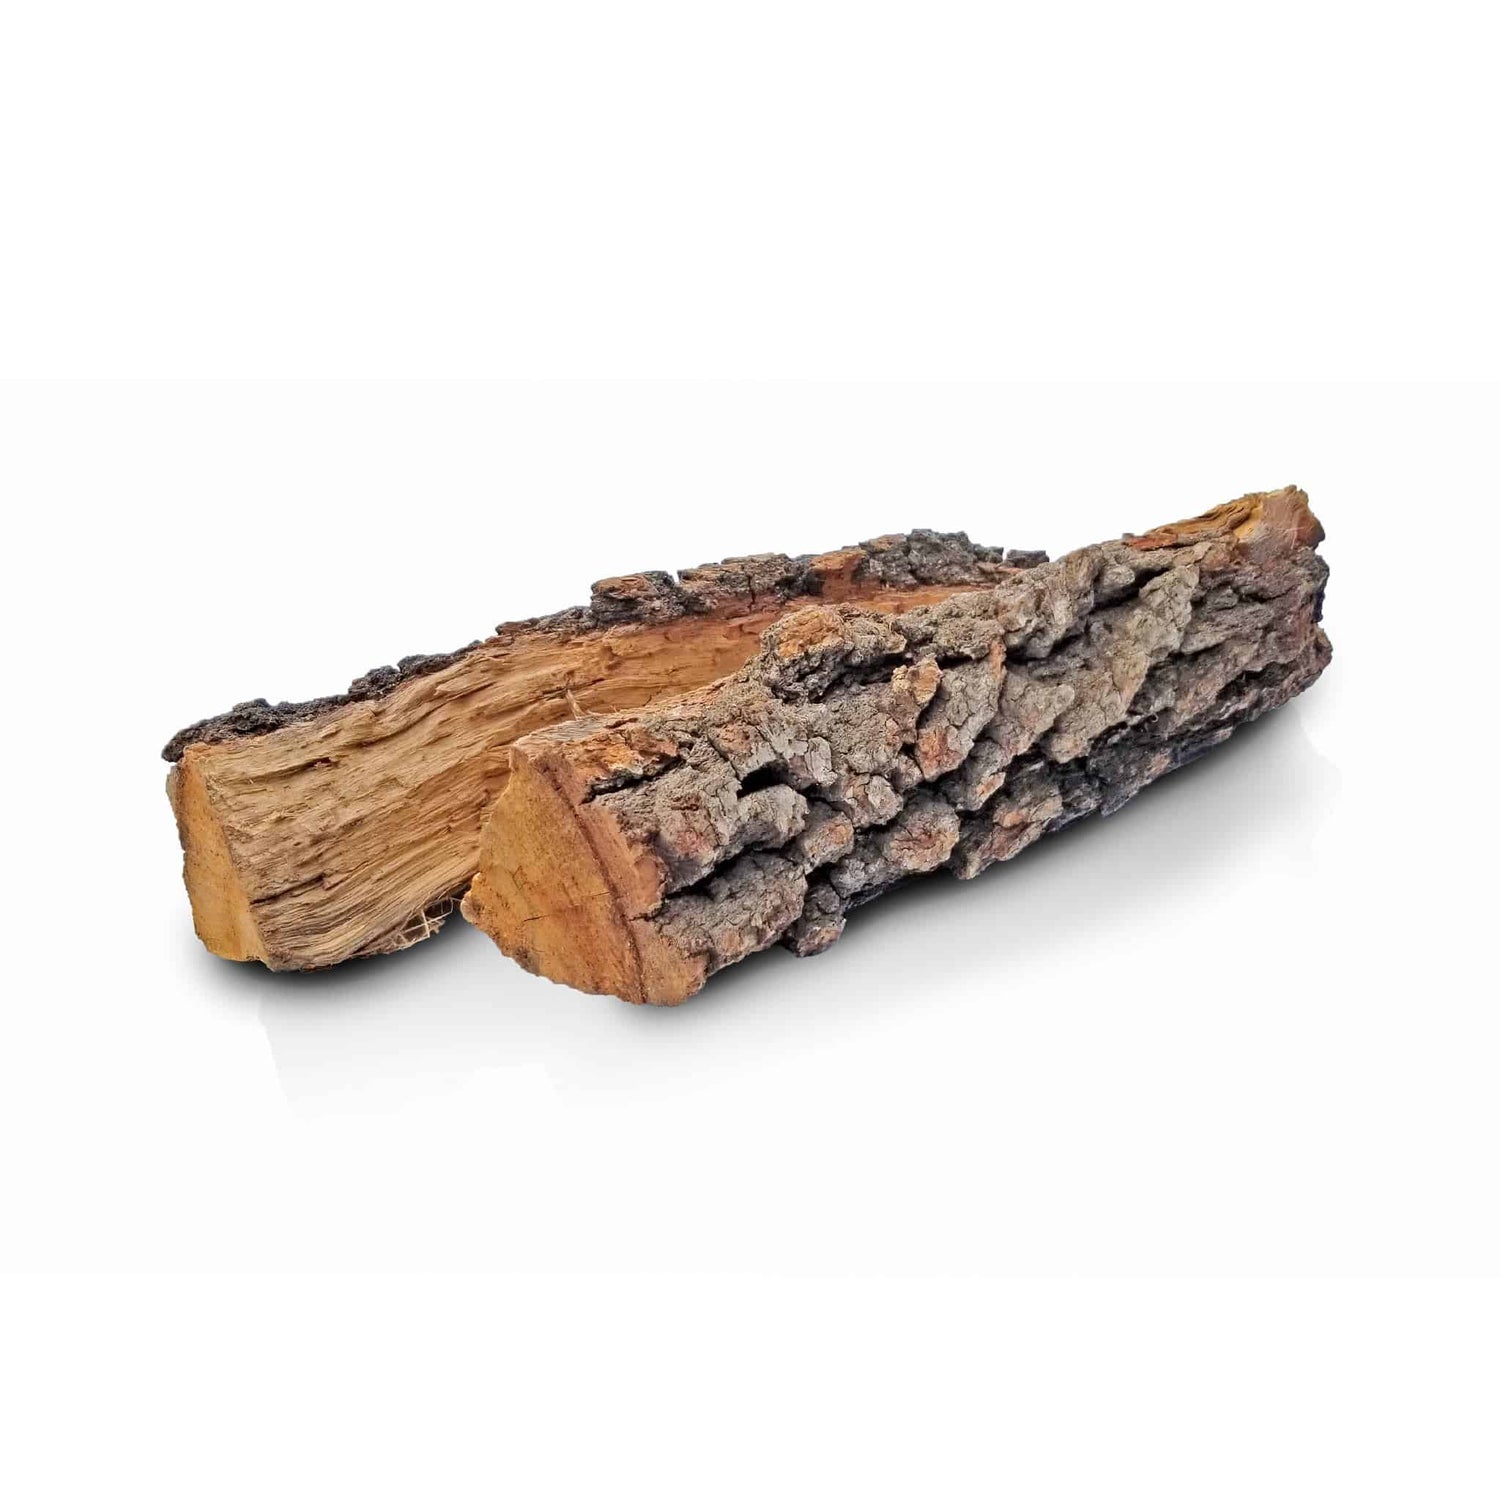 Seasoned Oak Firewood | ultra low moisture firewood